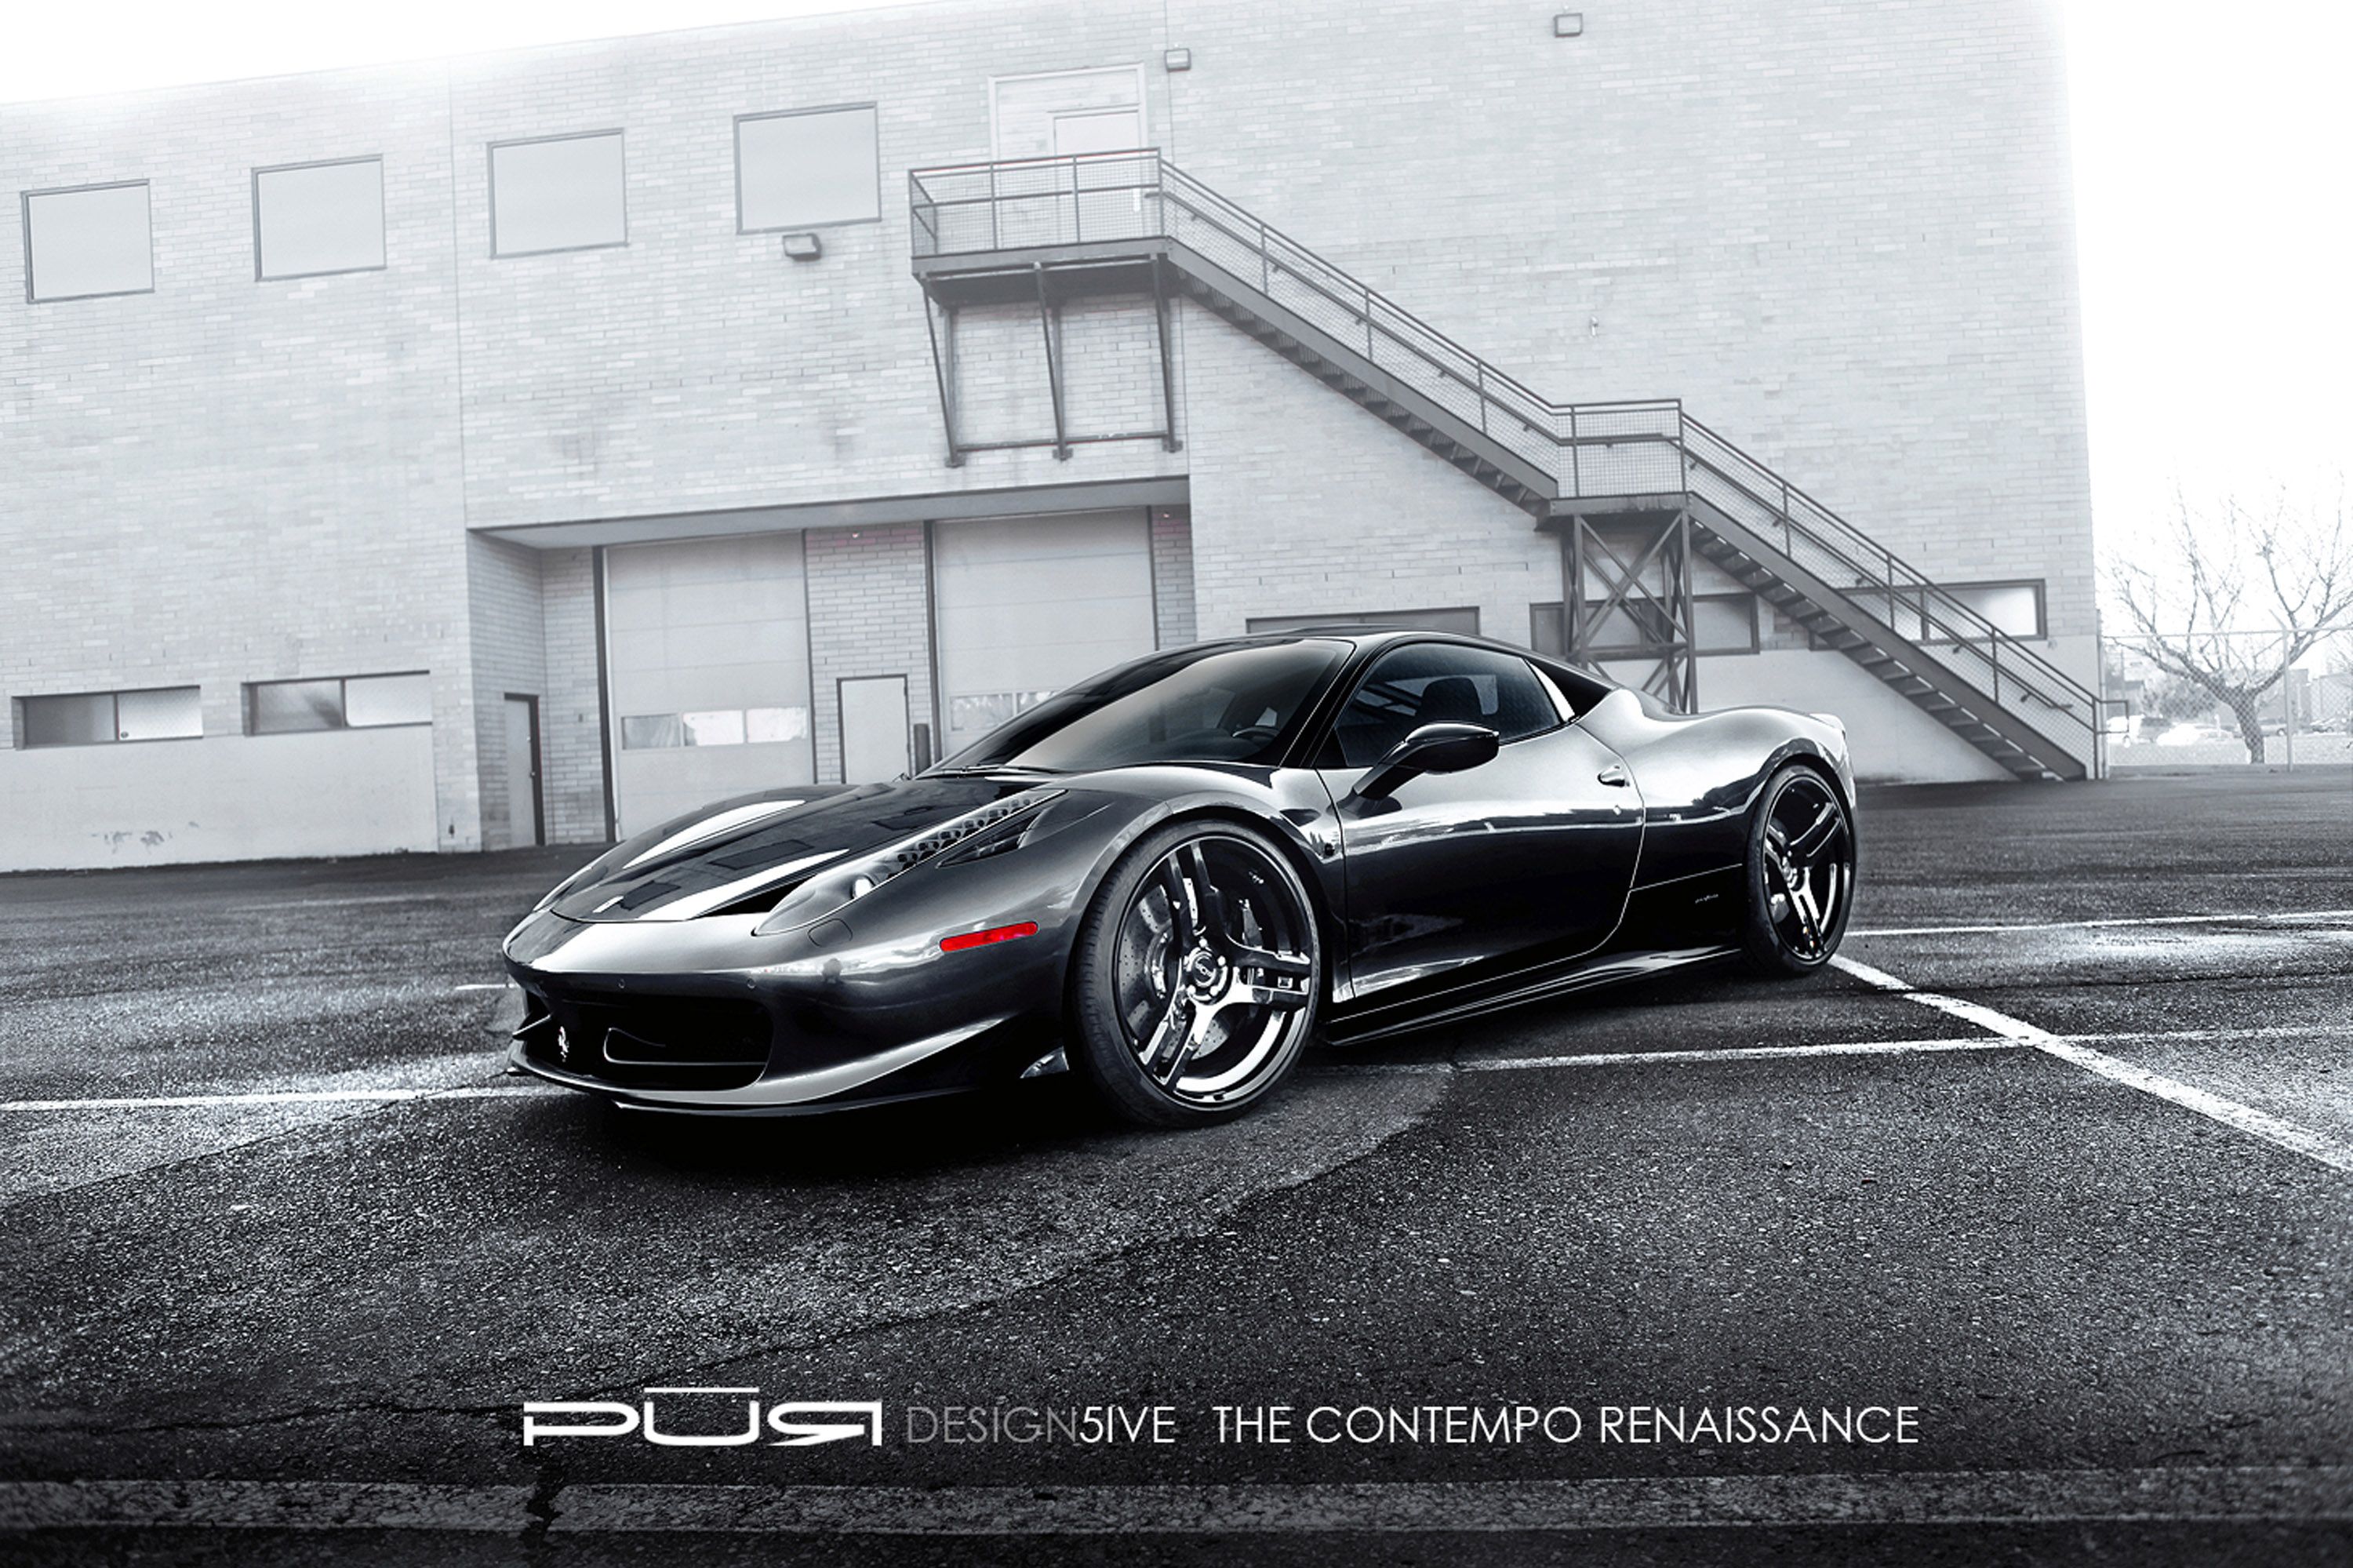 2012 Ferrari 458 Italia 'Design 5ive' SR Project Kiluminati by SR Auto Group and PUR Wheels